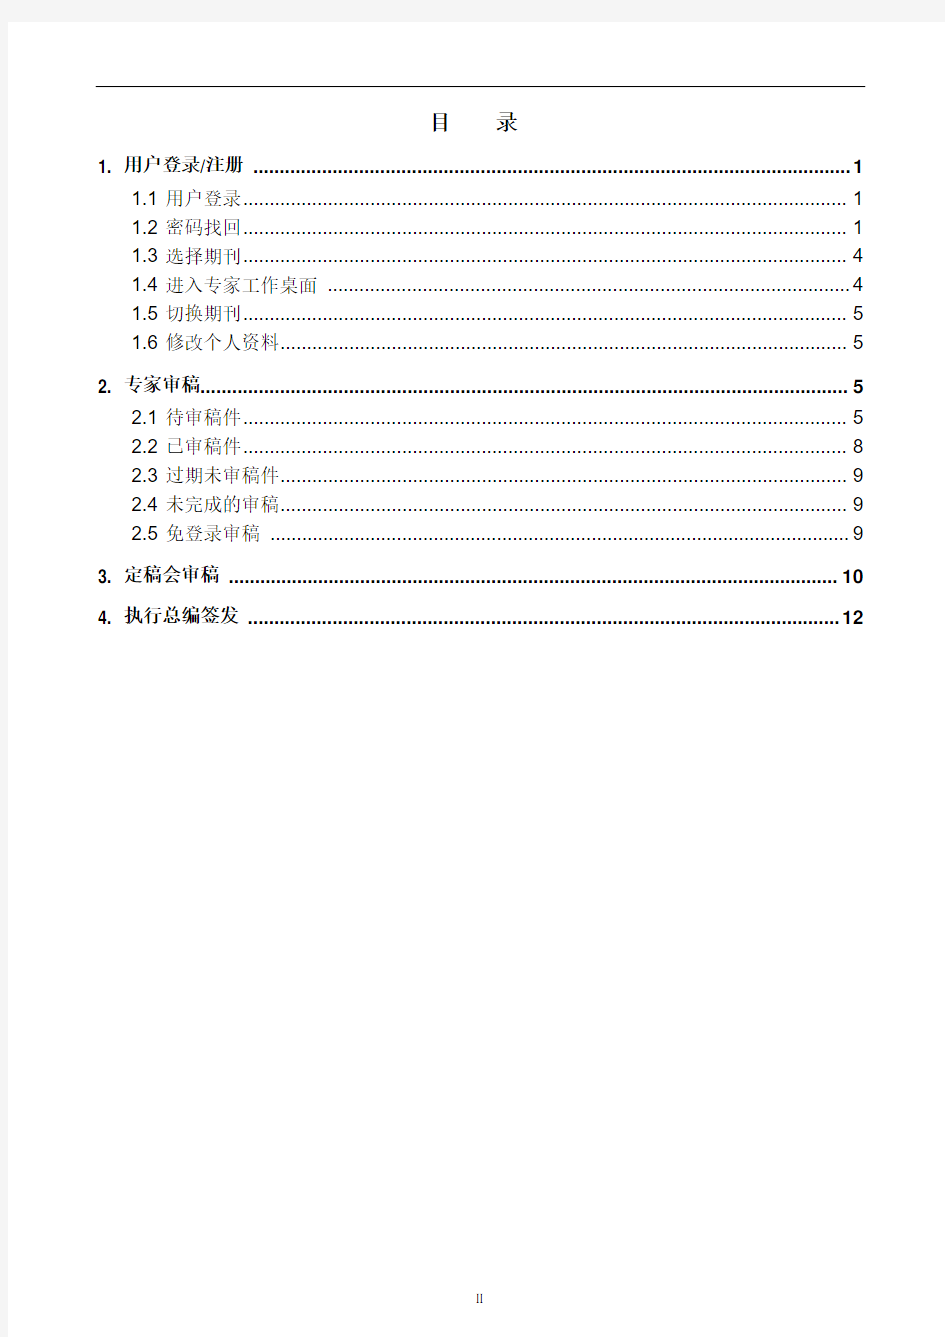 中华医学会杂志社远程稿件管理系统审稿专家操作手册